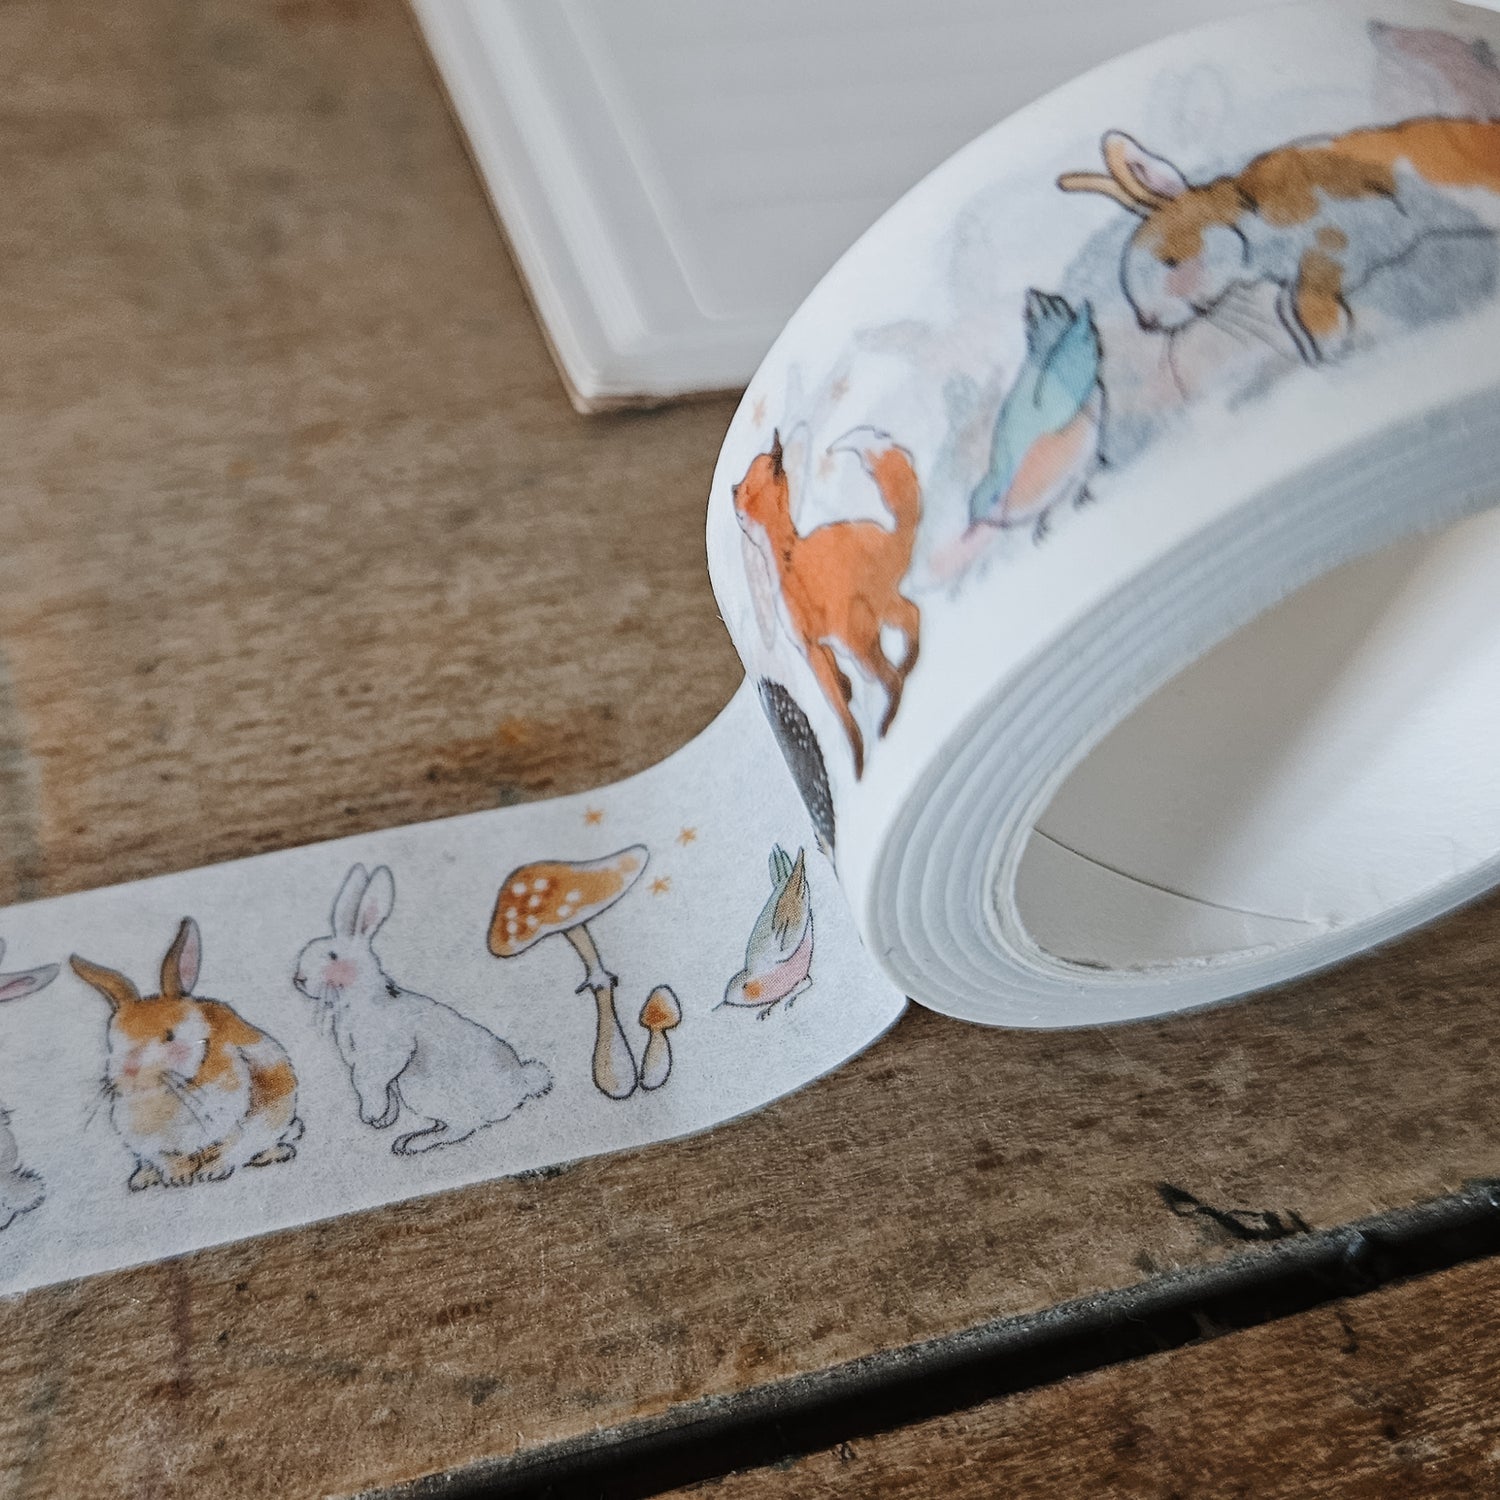 Washi tape masking tape illustrations animaux by bm